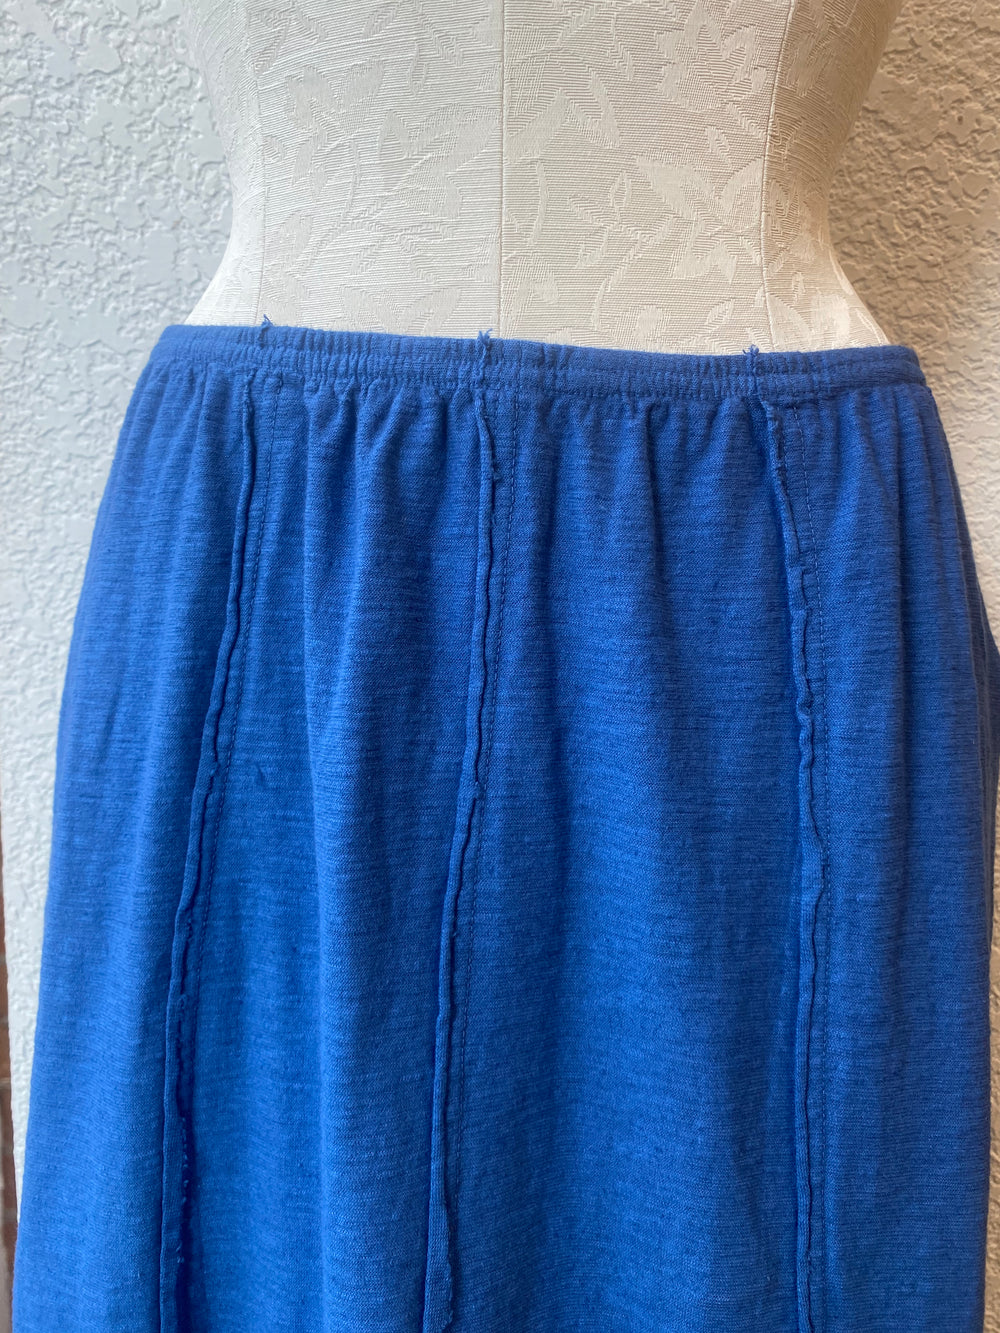 Cut Loose skirt, seamed panels linen blend (2 colors) SALE Sizes S, M